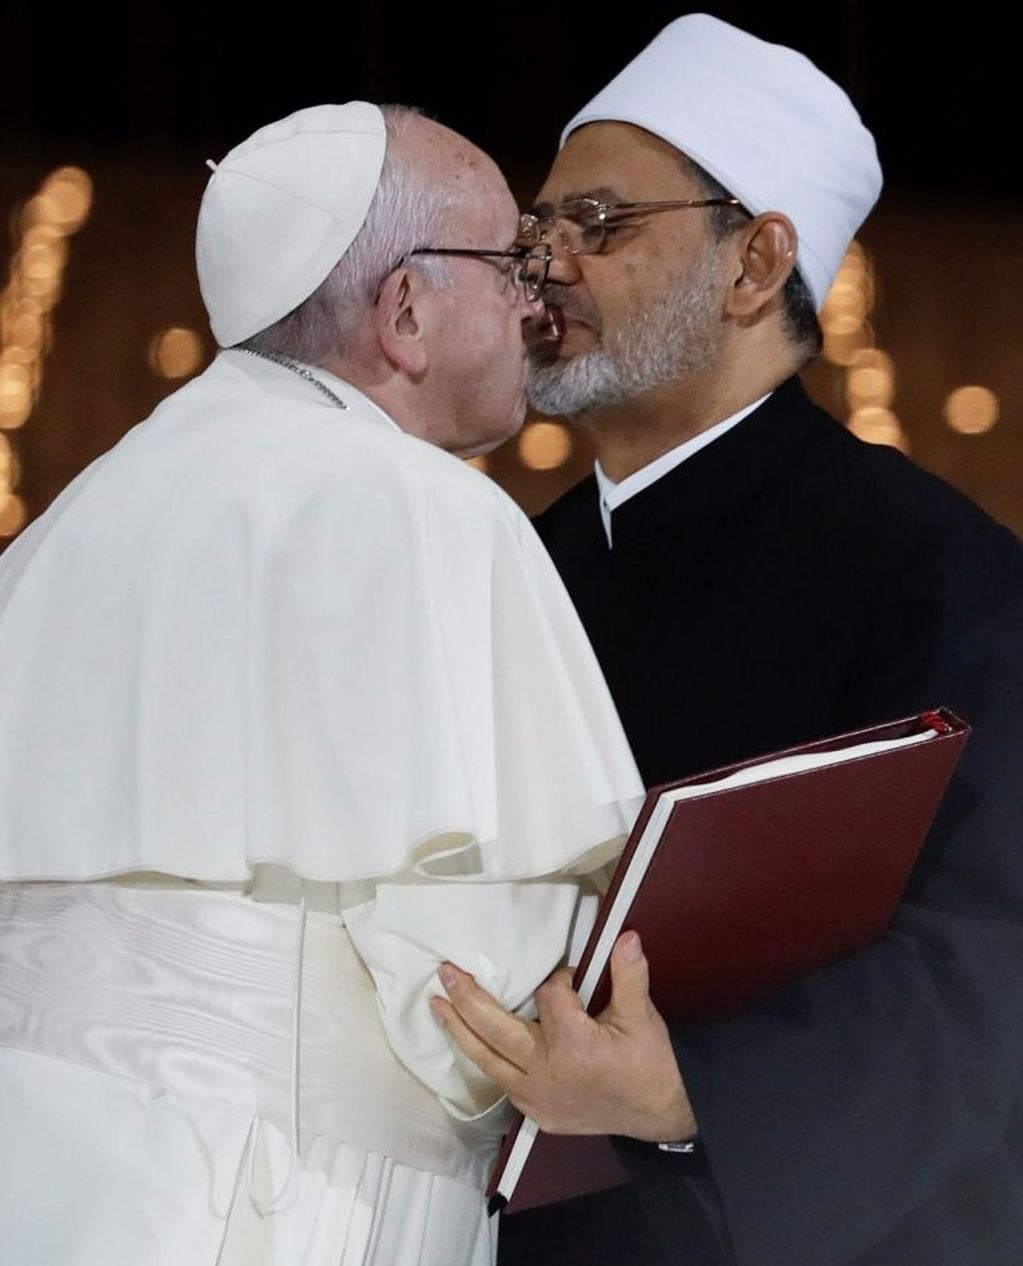 El papa Francisco y el imán musulmán. (AP)